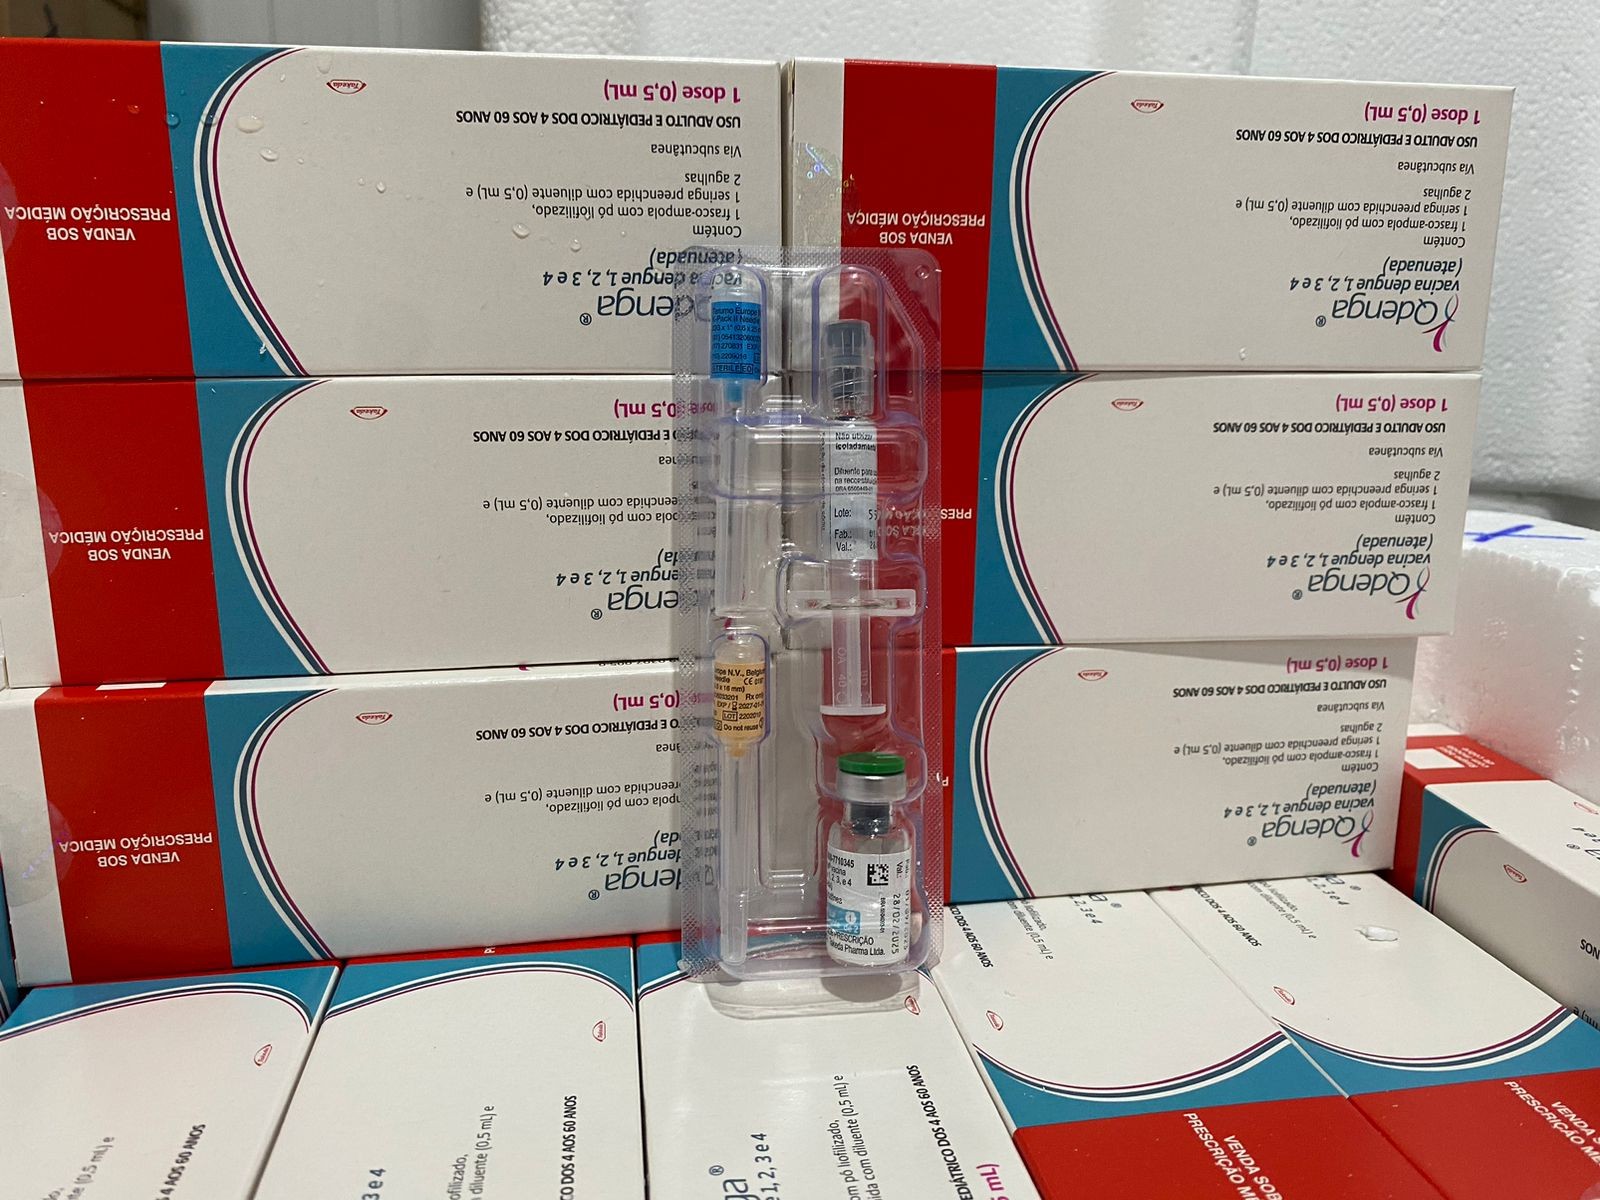 Piauí recebe primeiras doses da vacina contra a dengue; veja cidades